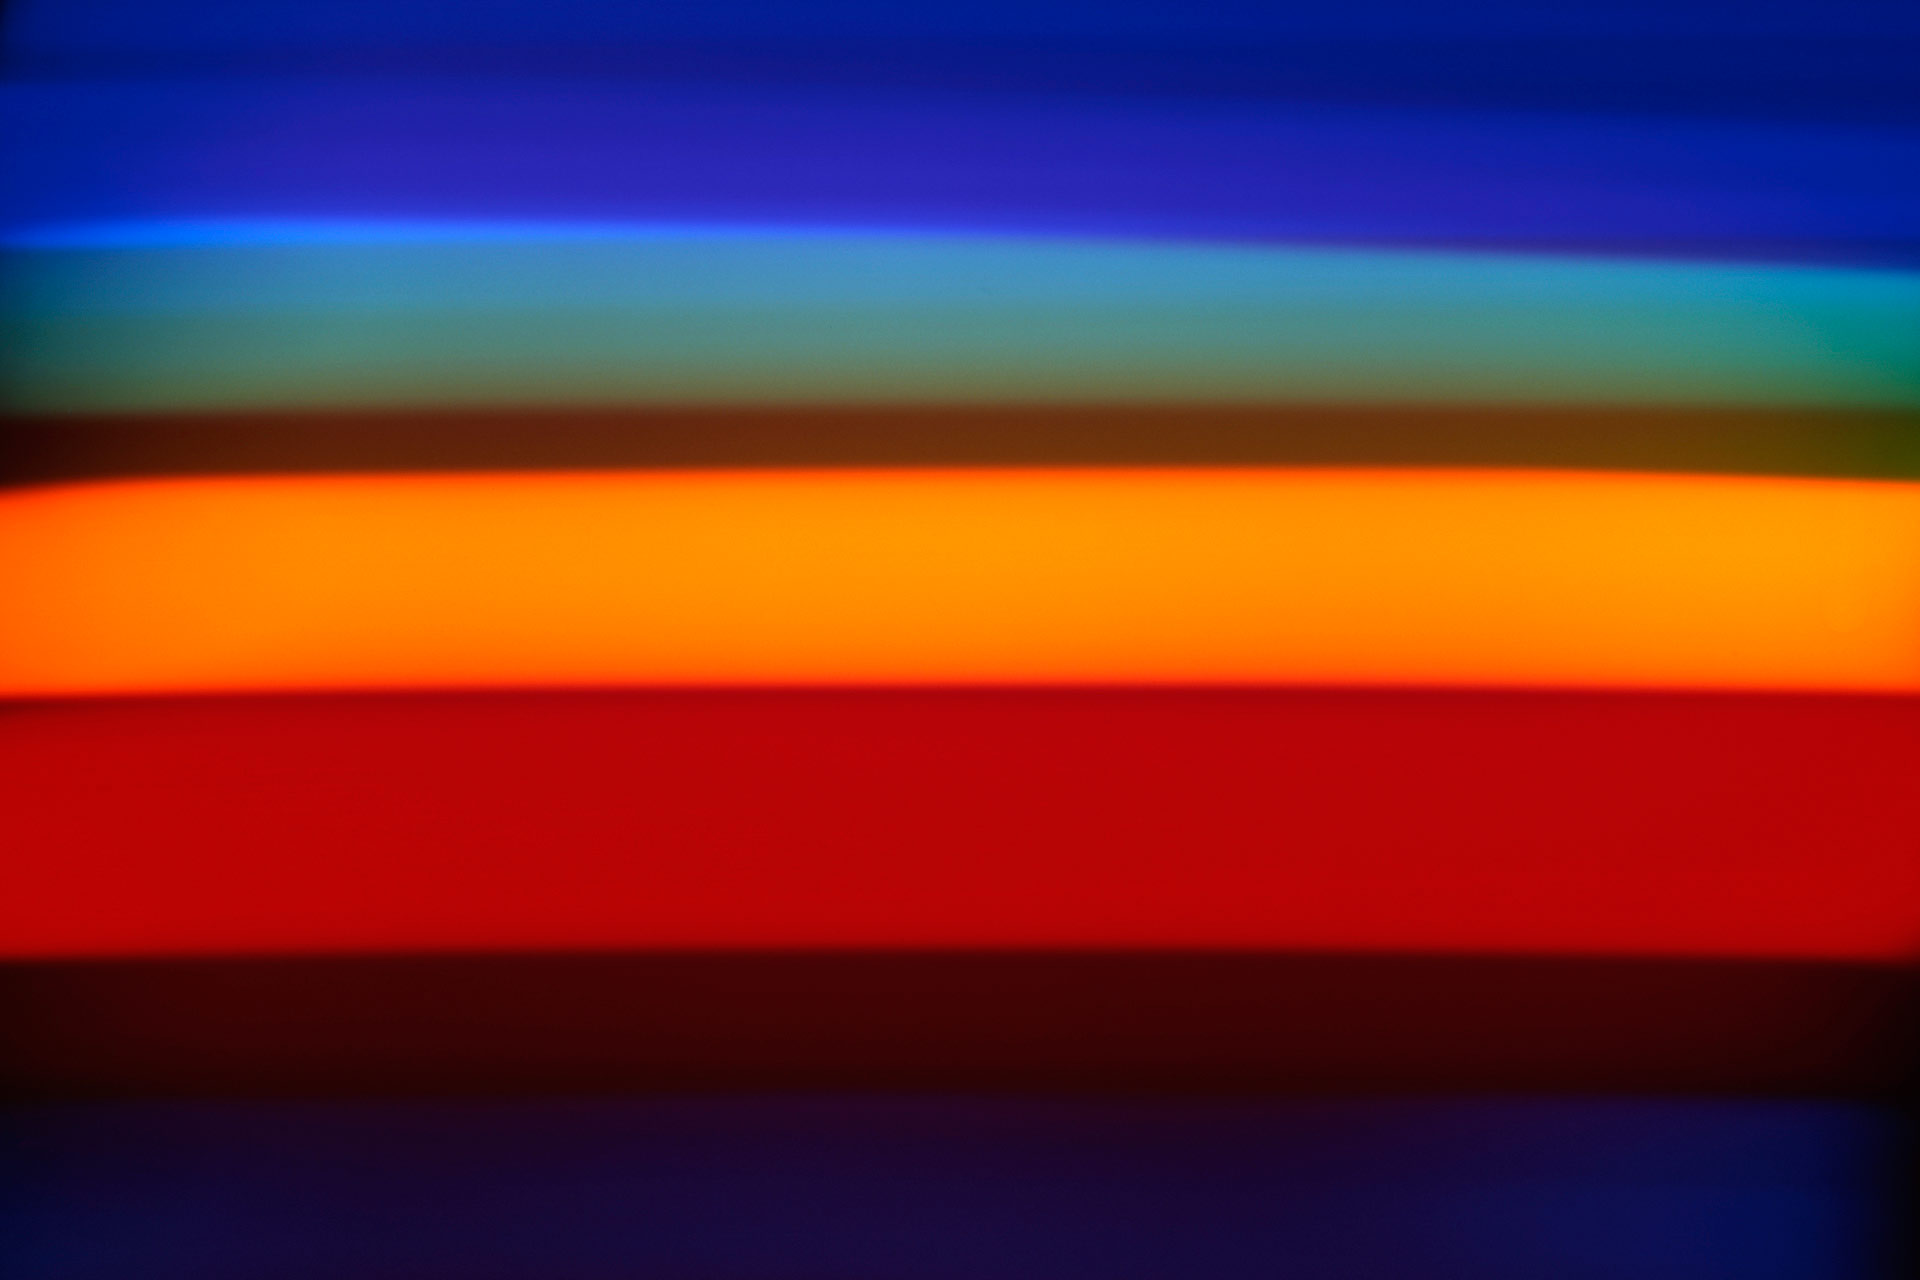 Emission Spectrum of Helium #1, 2011